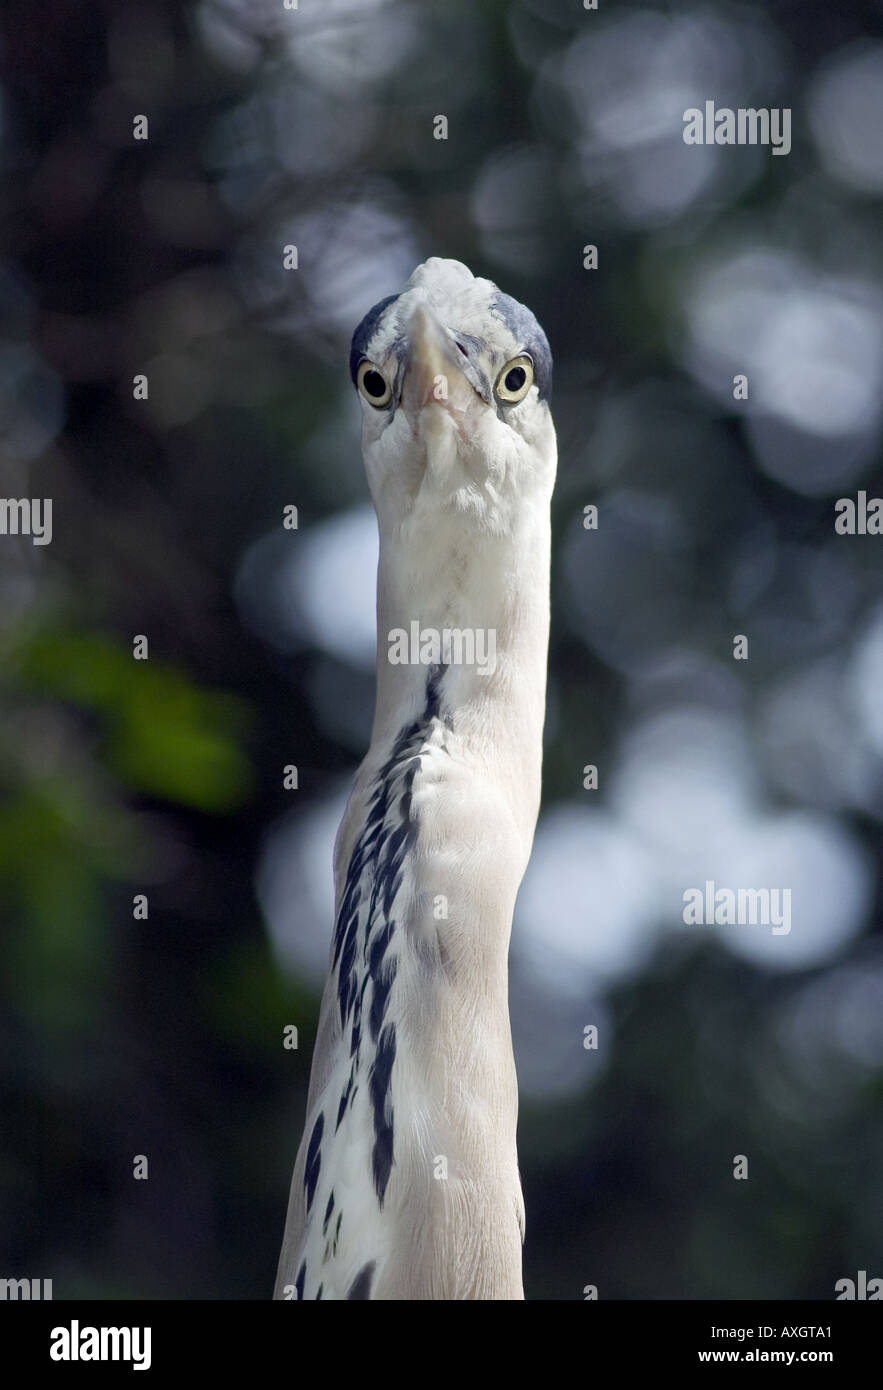 portrait of heron Stock Photo